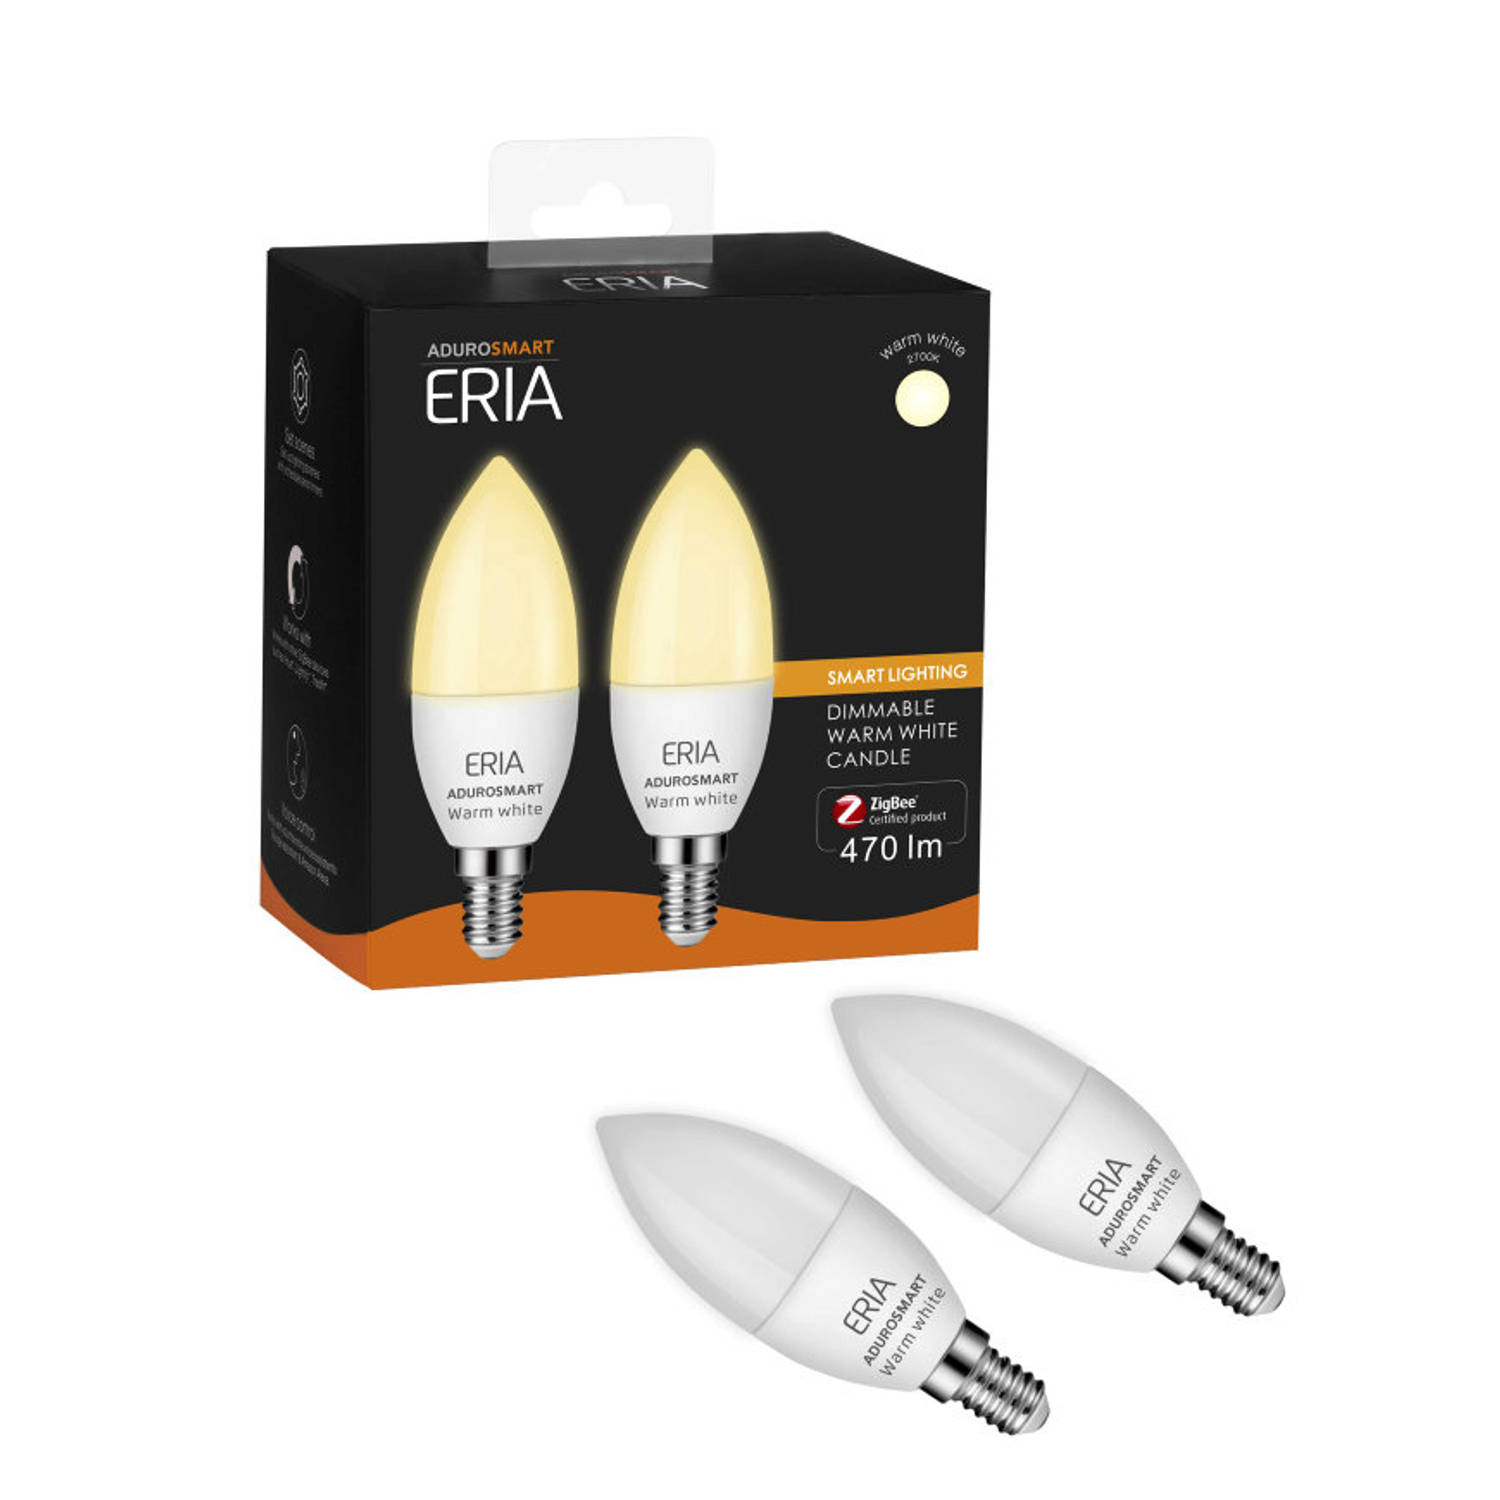 AduroSmart ERIA® Warm White kaarslamp, E14 fitting (2-pack)